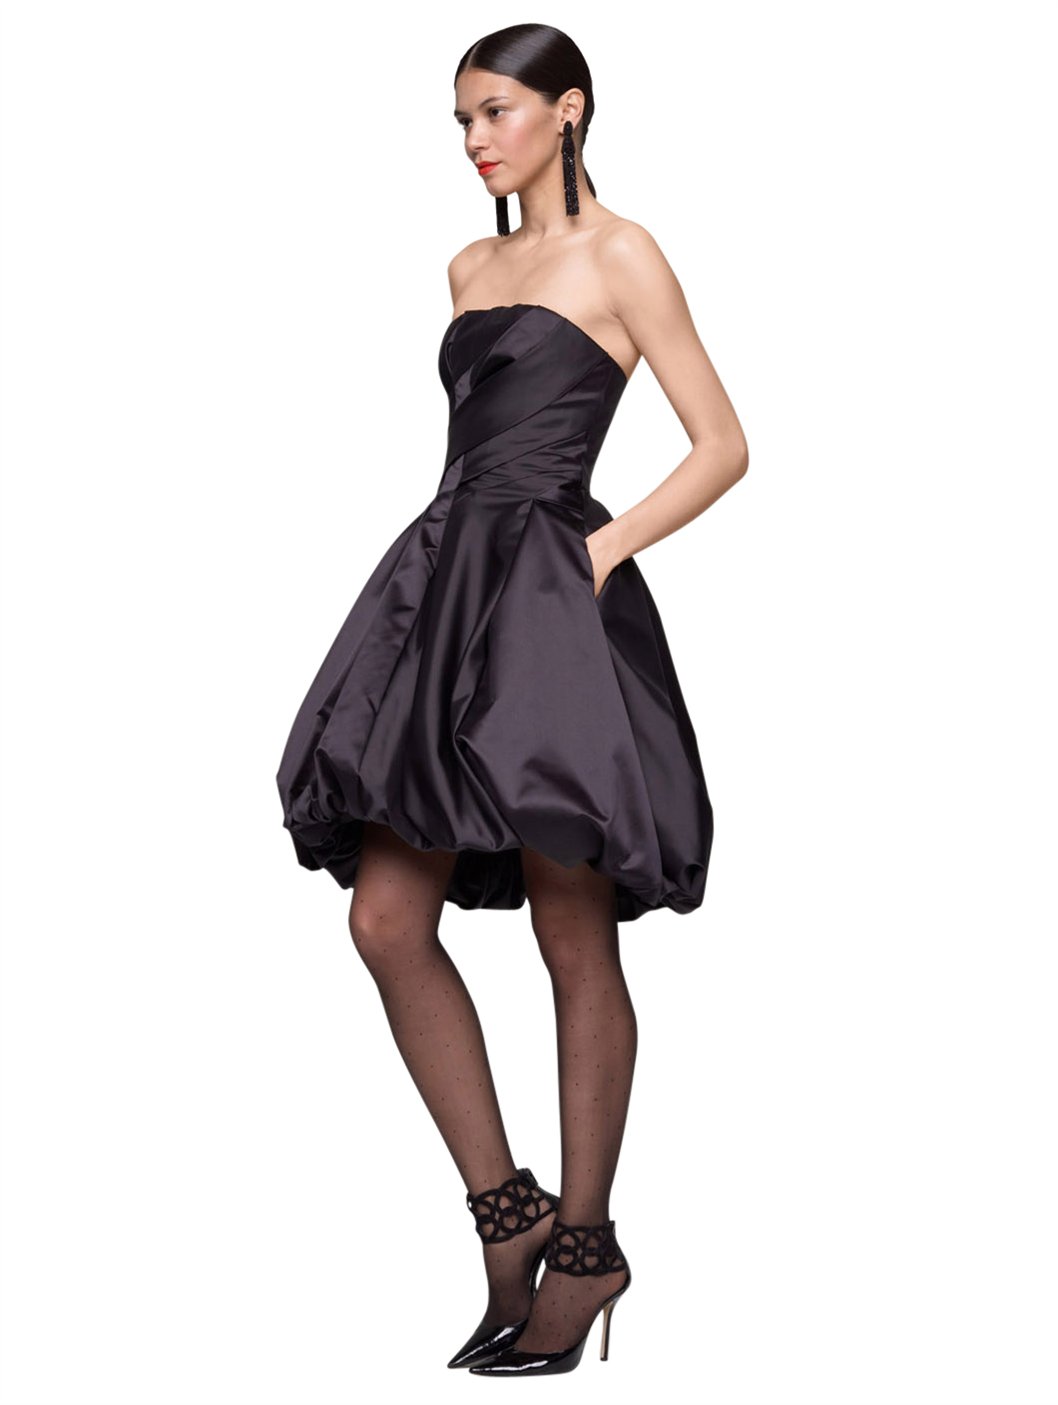 https://cdna.lystit.com/photos/2012/09/01/oscar-de-la-renta-black-duchess-satin-strapless-bubble-dress-product-2-4619224-515142057.jpeg